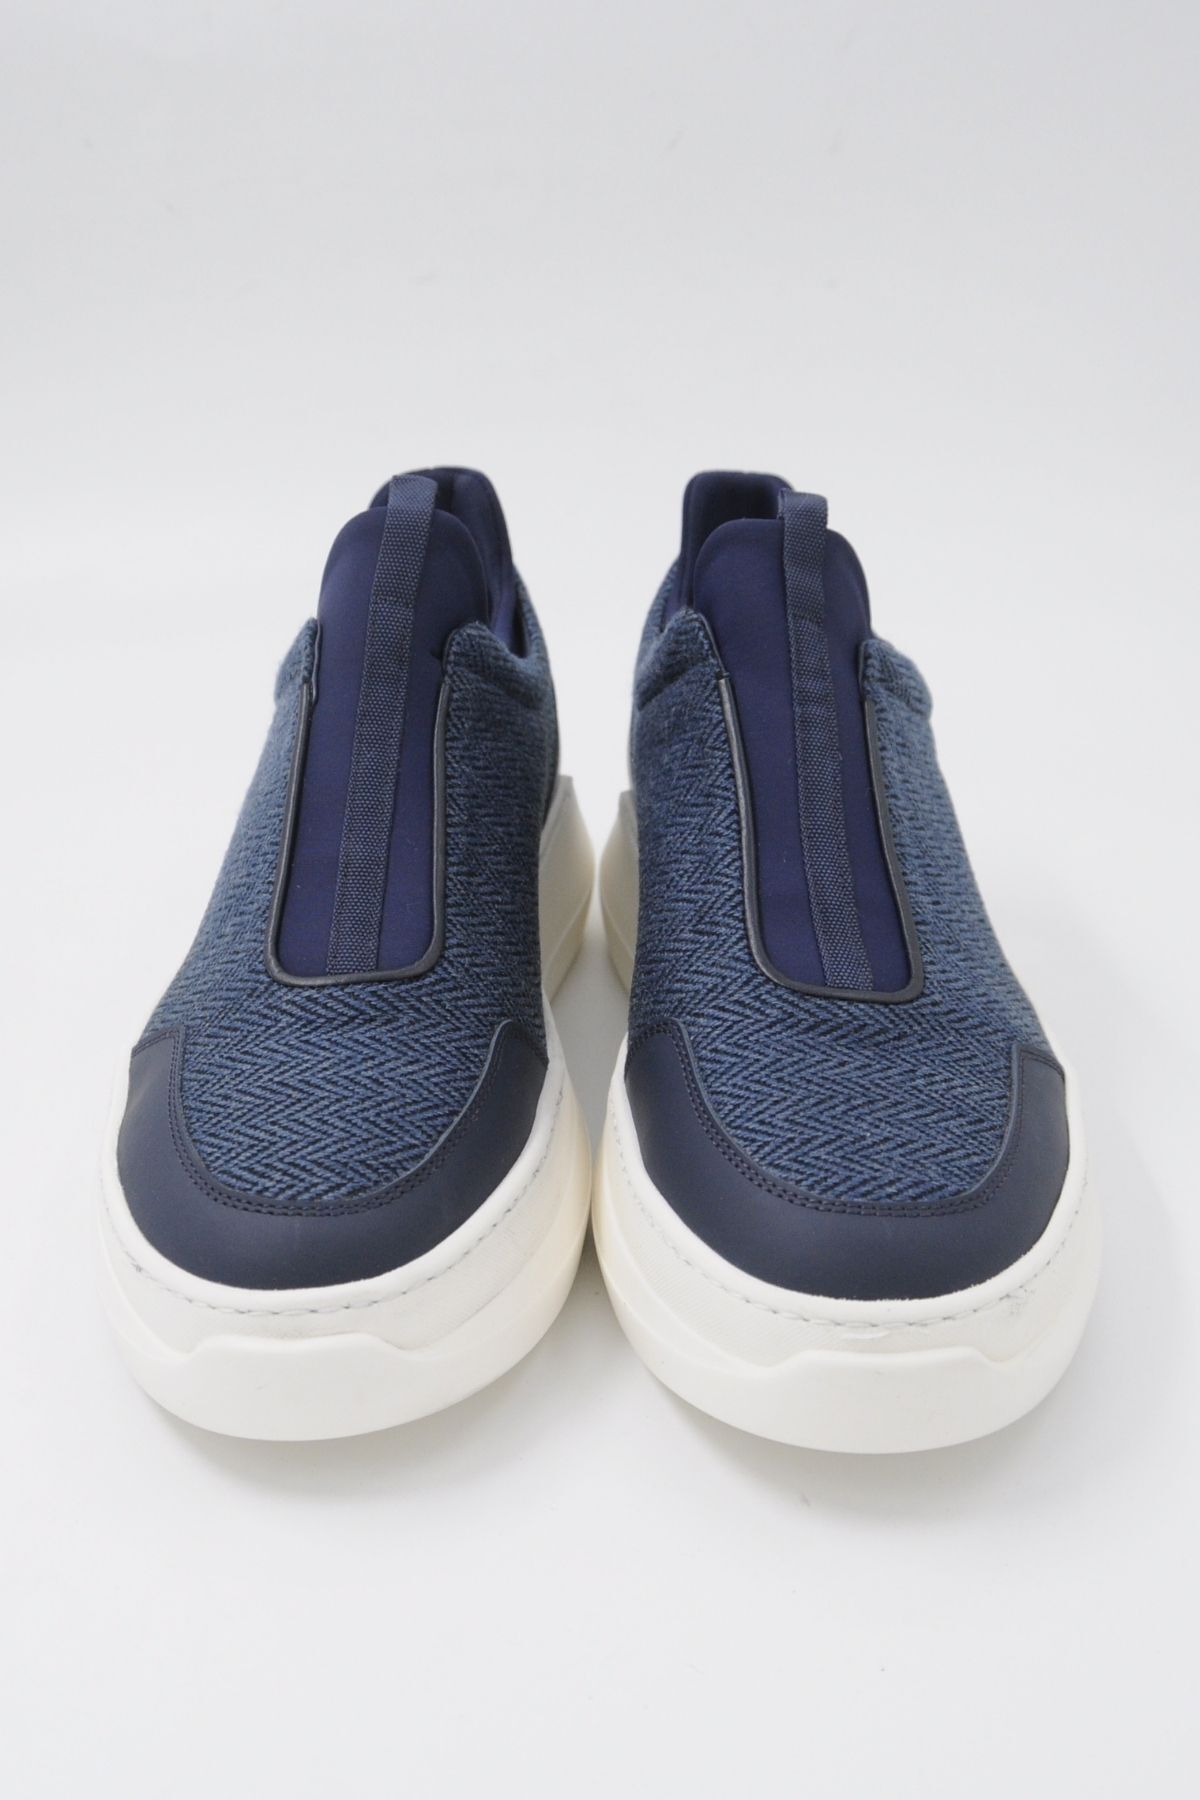 Trust Shoes Mavi Sneaker Spor Ayakkabı